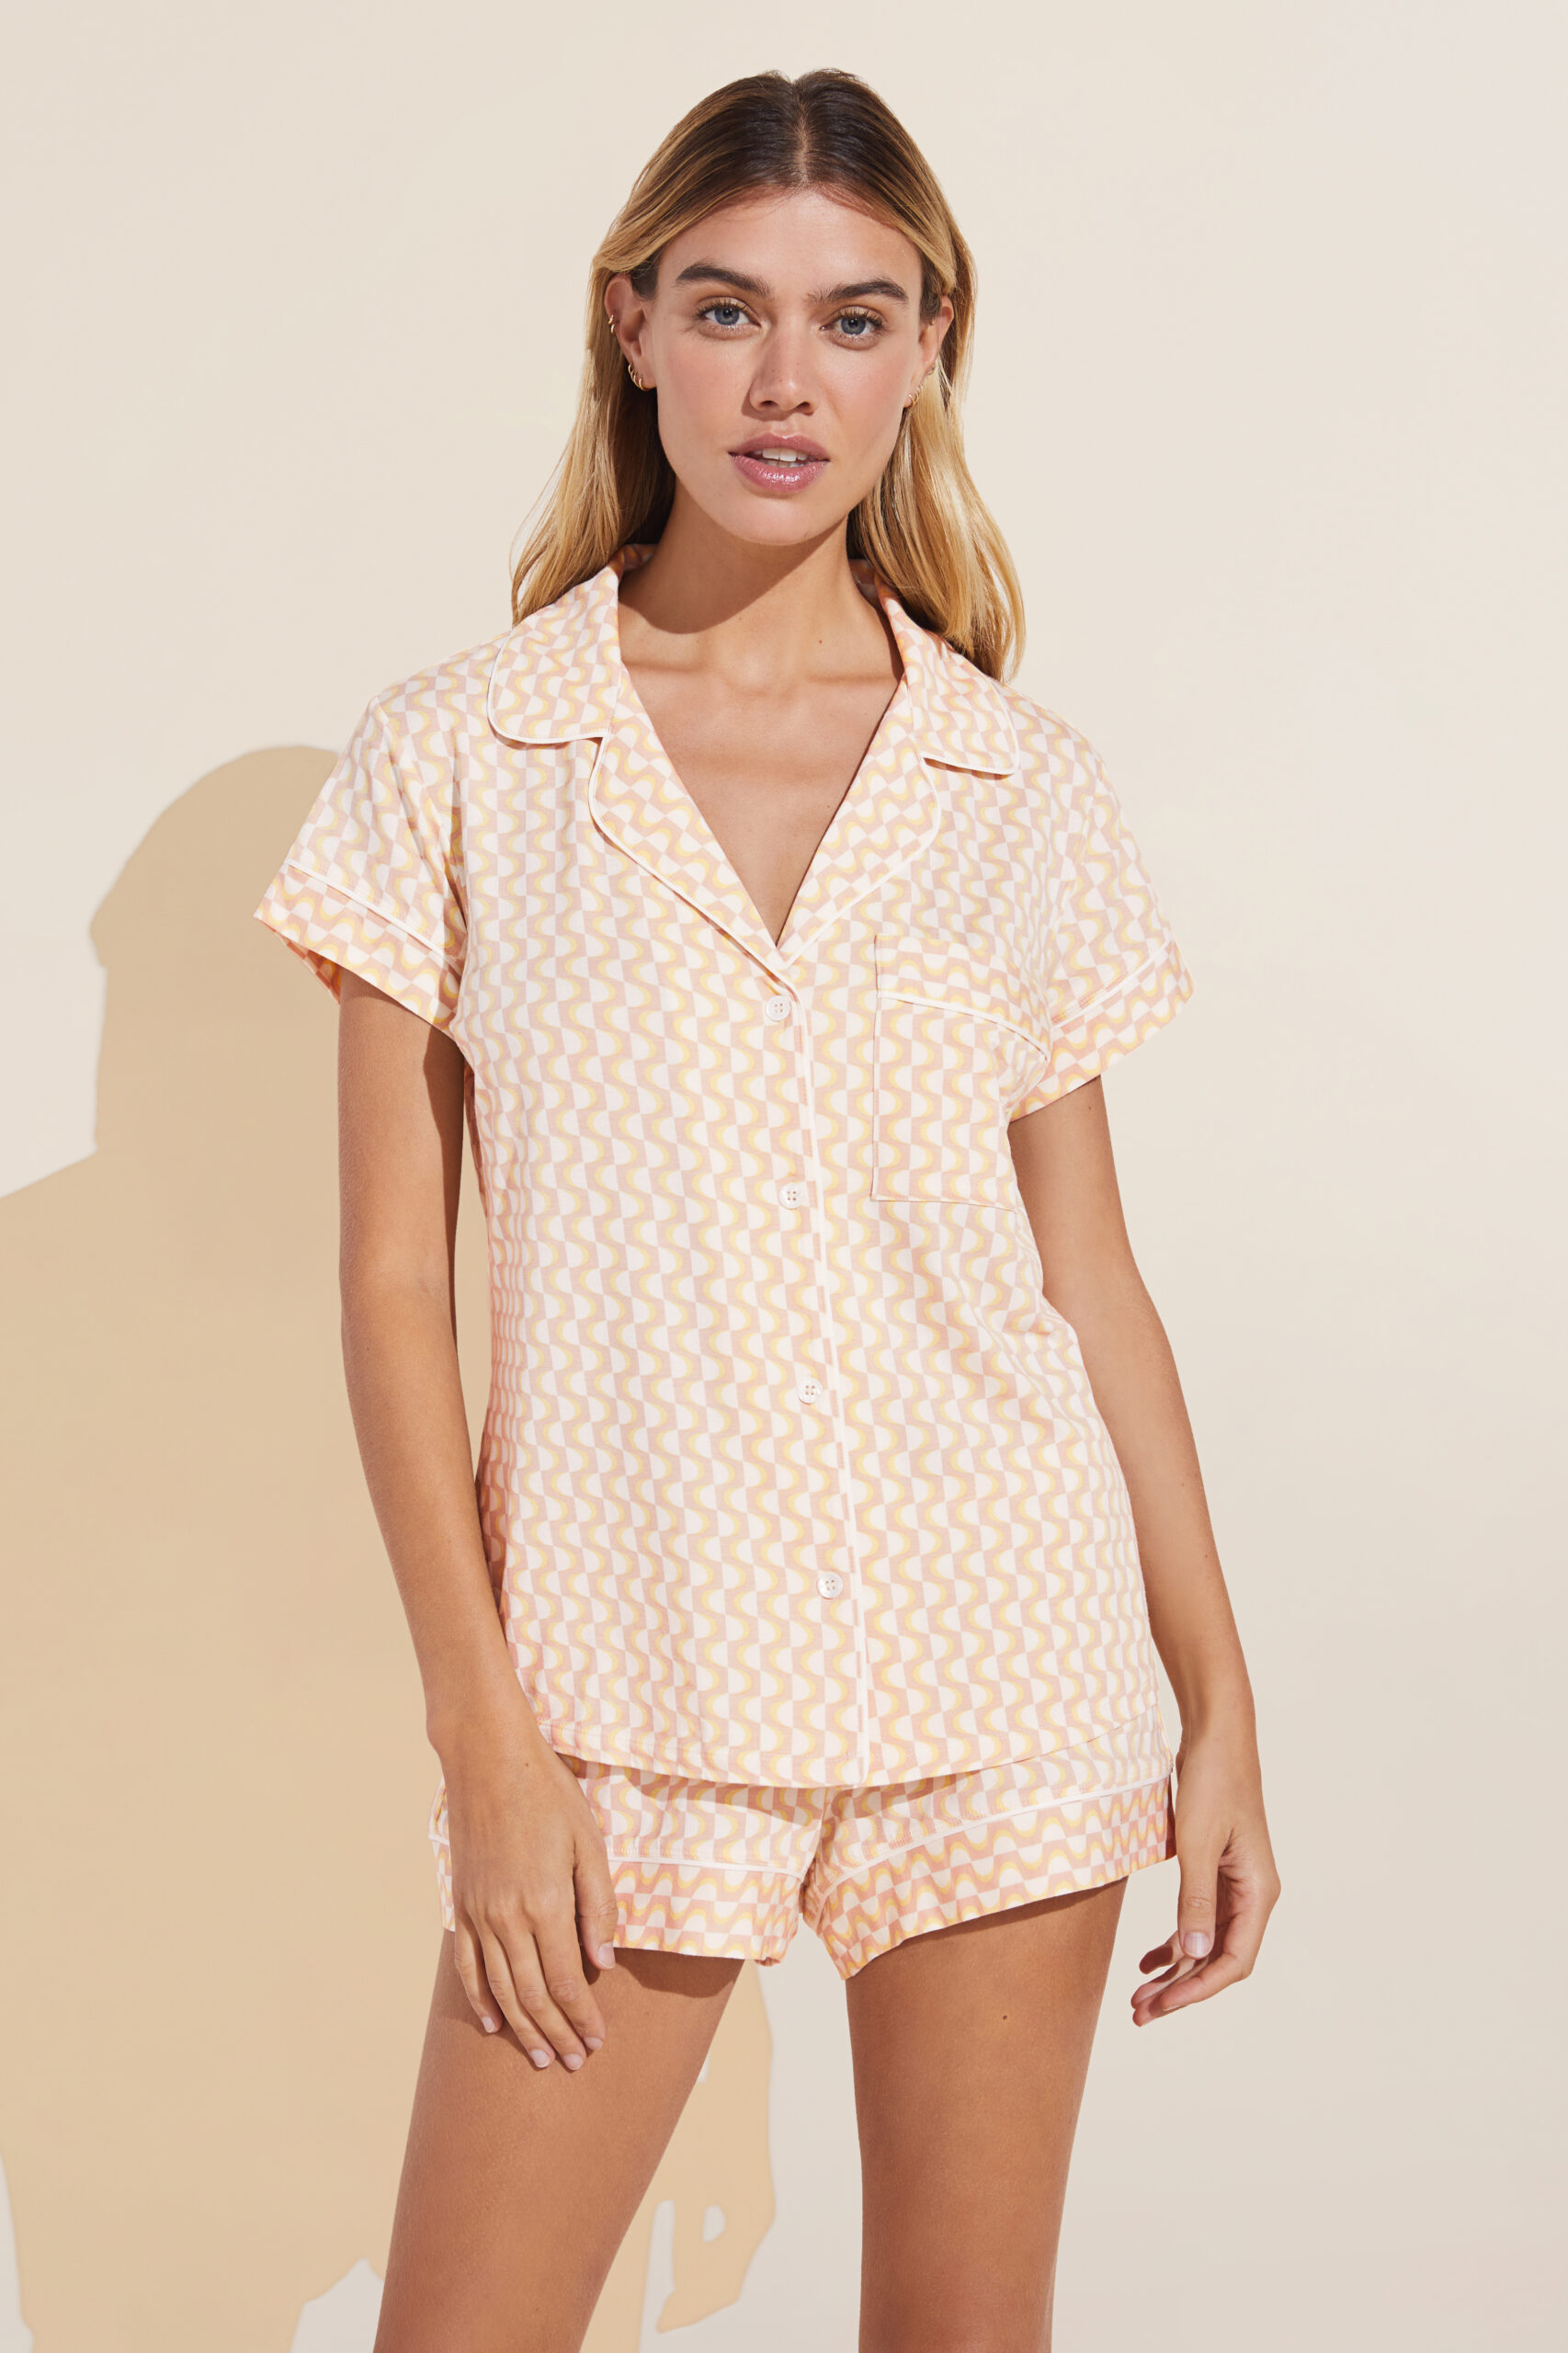 Summer Dress Women's Short Modal Cotton Sleepwear Loungewear Sleepwear PJs  Comfortable Pajamas Can Be Worn Outside-L_47.5-55KG